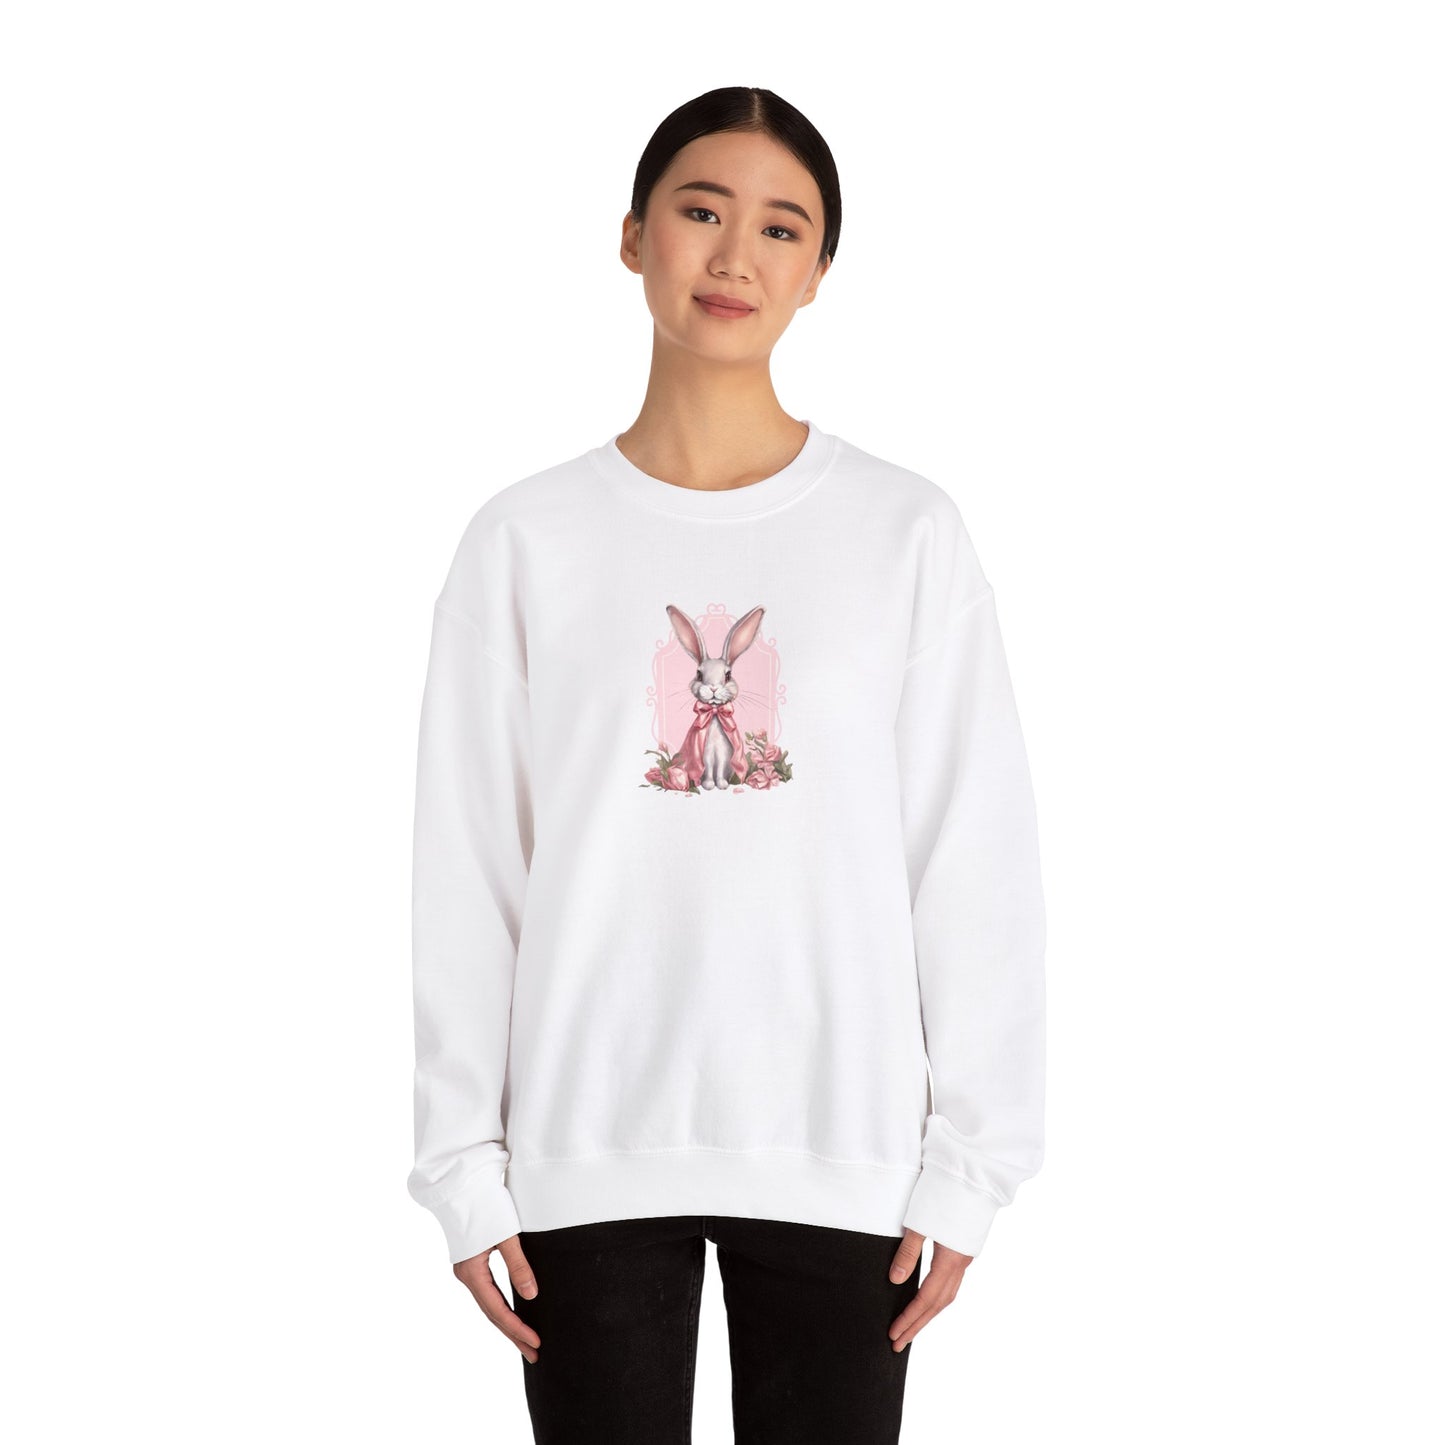 Coquette Sweatshirt, Trendy Crewneck, Bunny Sweatshirt, Easter Gift, Cottagecore Sweatshirt , Vintage Graphic Sweatshirt, Gift for Easter